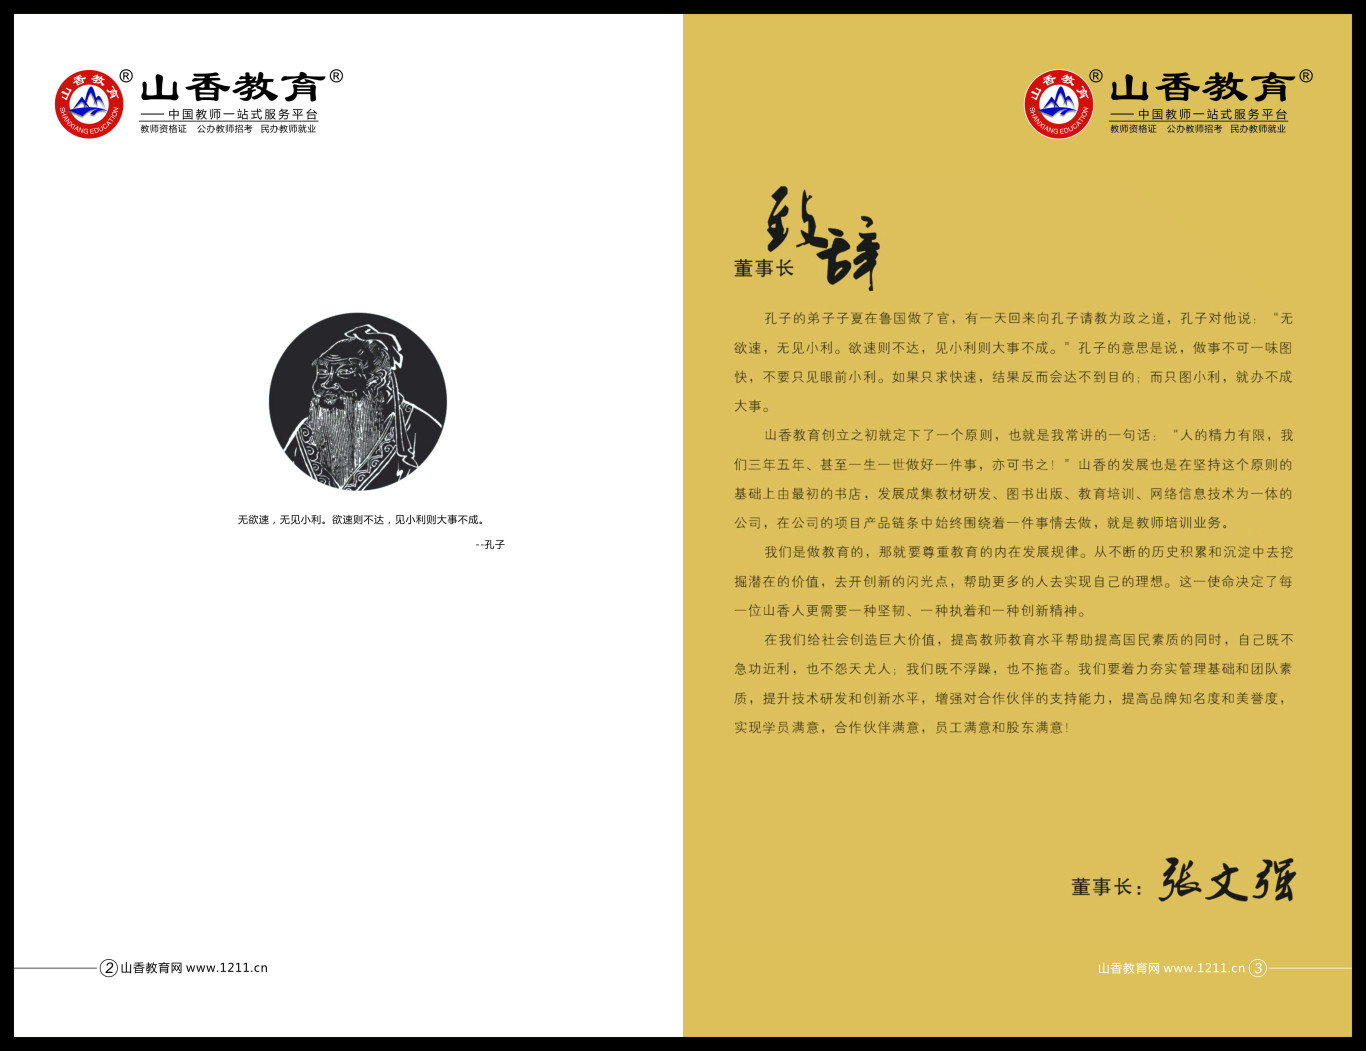 山香教育教师培训项目加盟手册图2